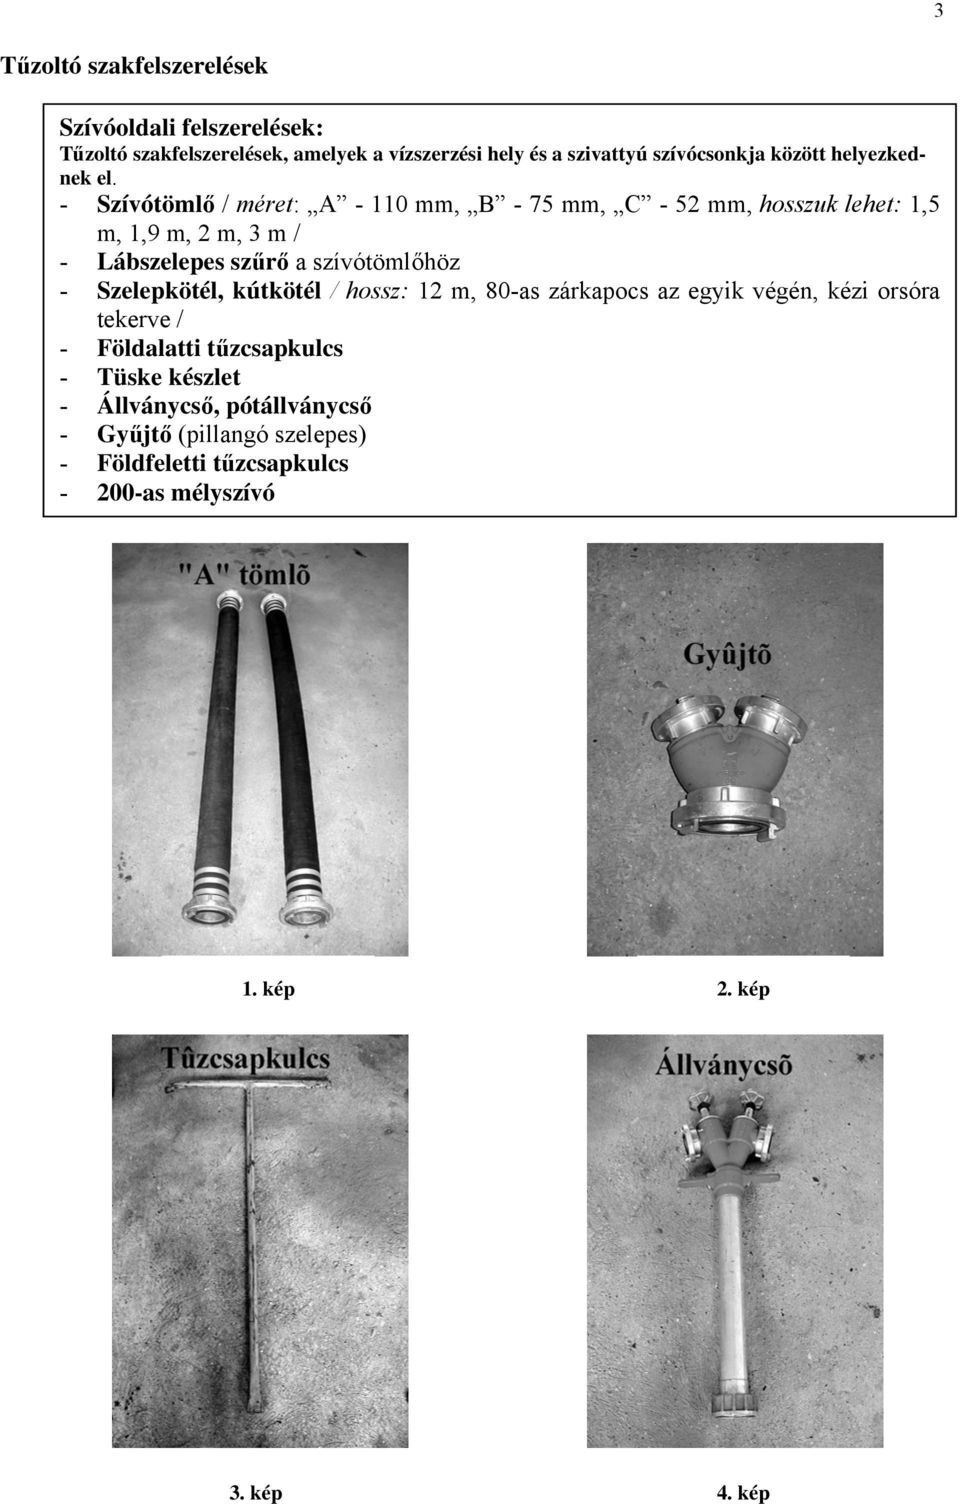 - Szívótömlő / méret: A - 110 mm, B - 75 mm, C - 52 mm, hosszuk lehet: 1,5 m, 1,9 m, 2 m, 3 m / - Lábszelepes szűrő a szívótömlőhöz -